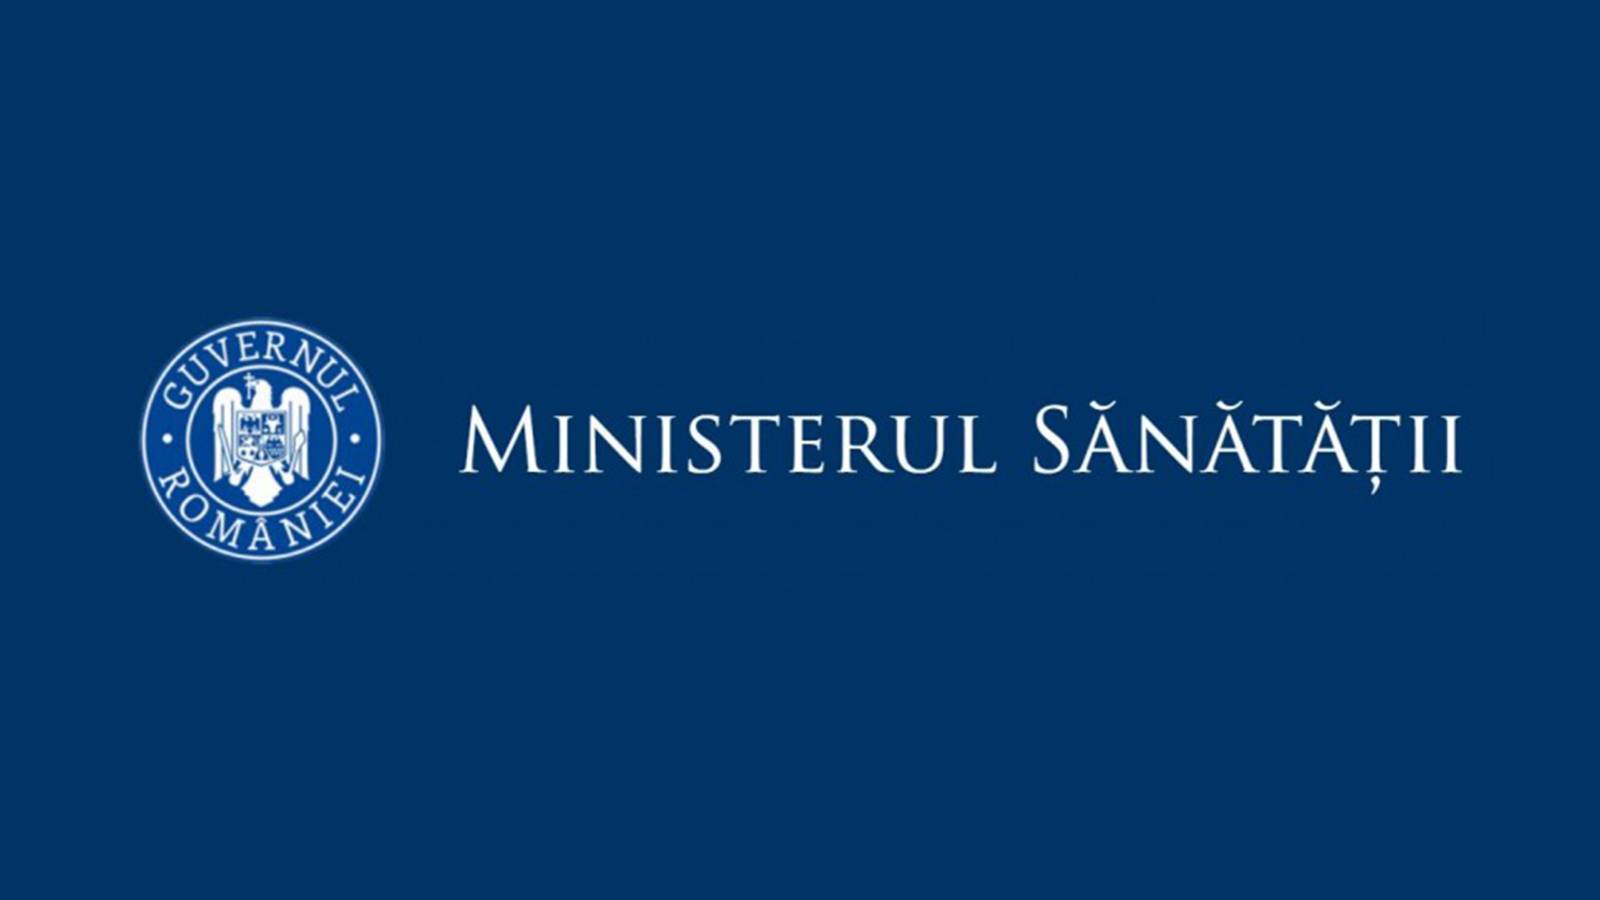 Ministerul Sanatatii Mesajul Important pentru Milioane de Romania